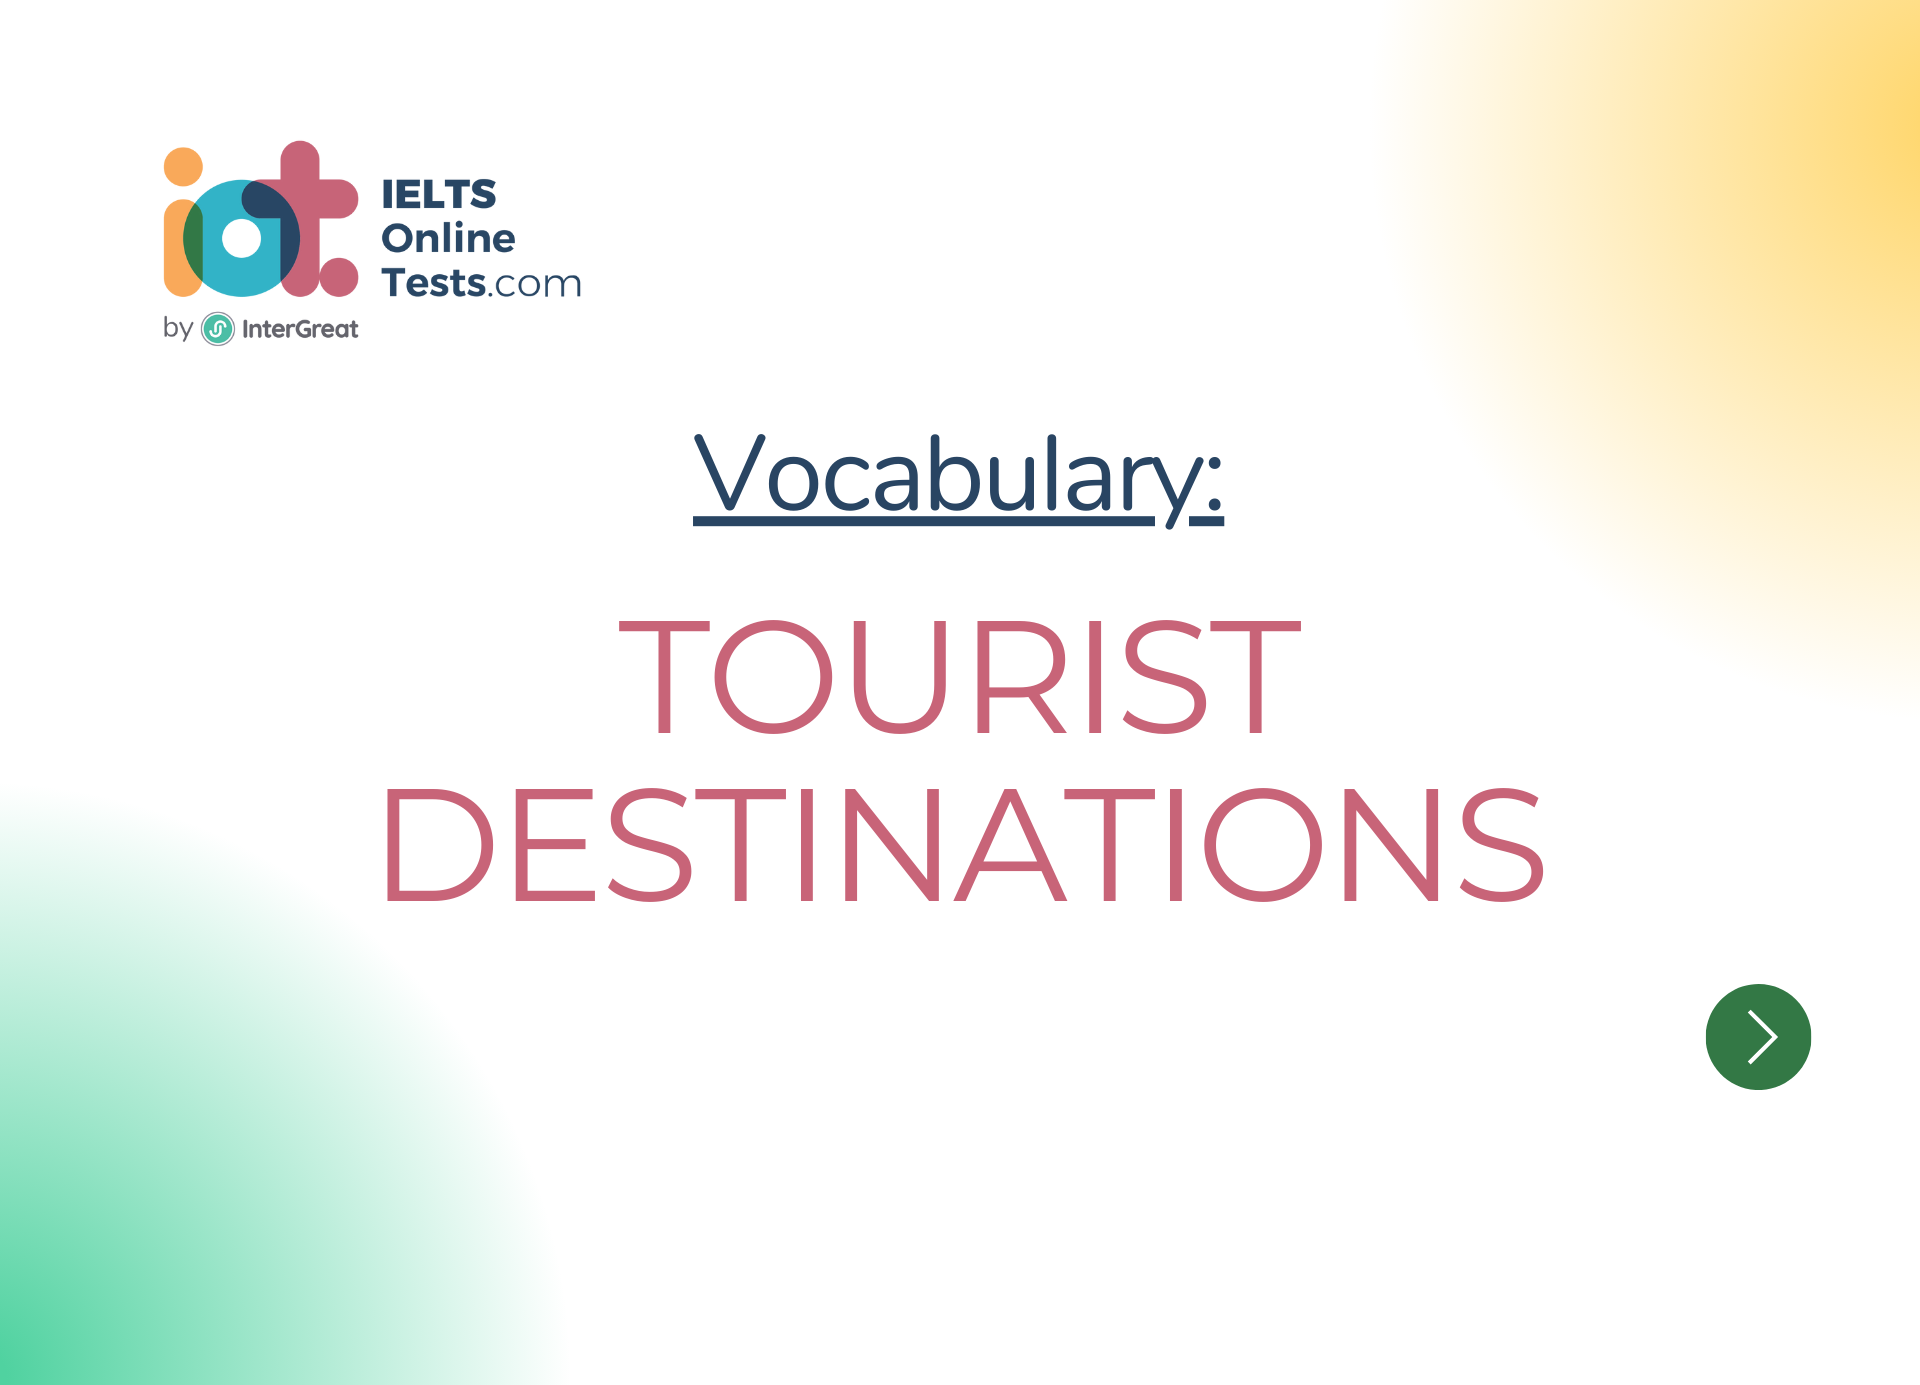 Địa điểm du lịch (Tourist destinations)